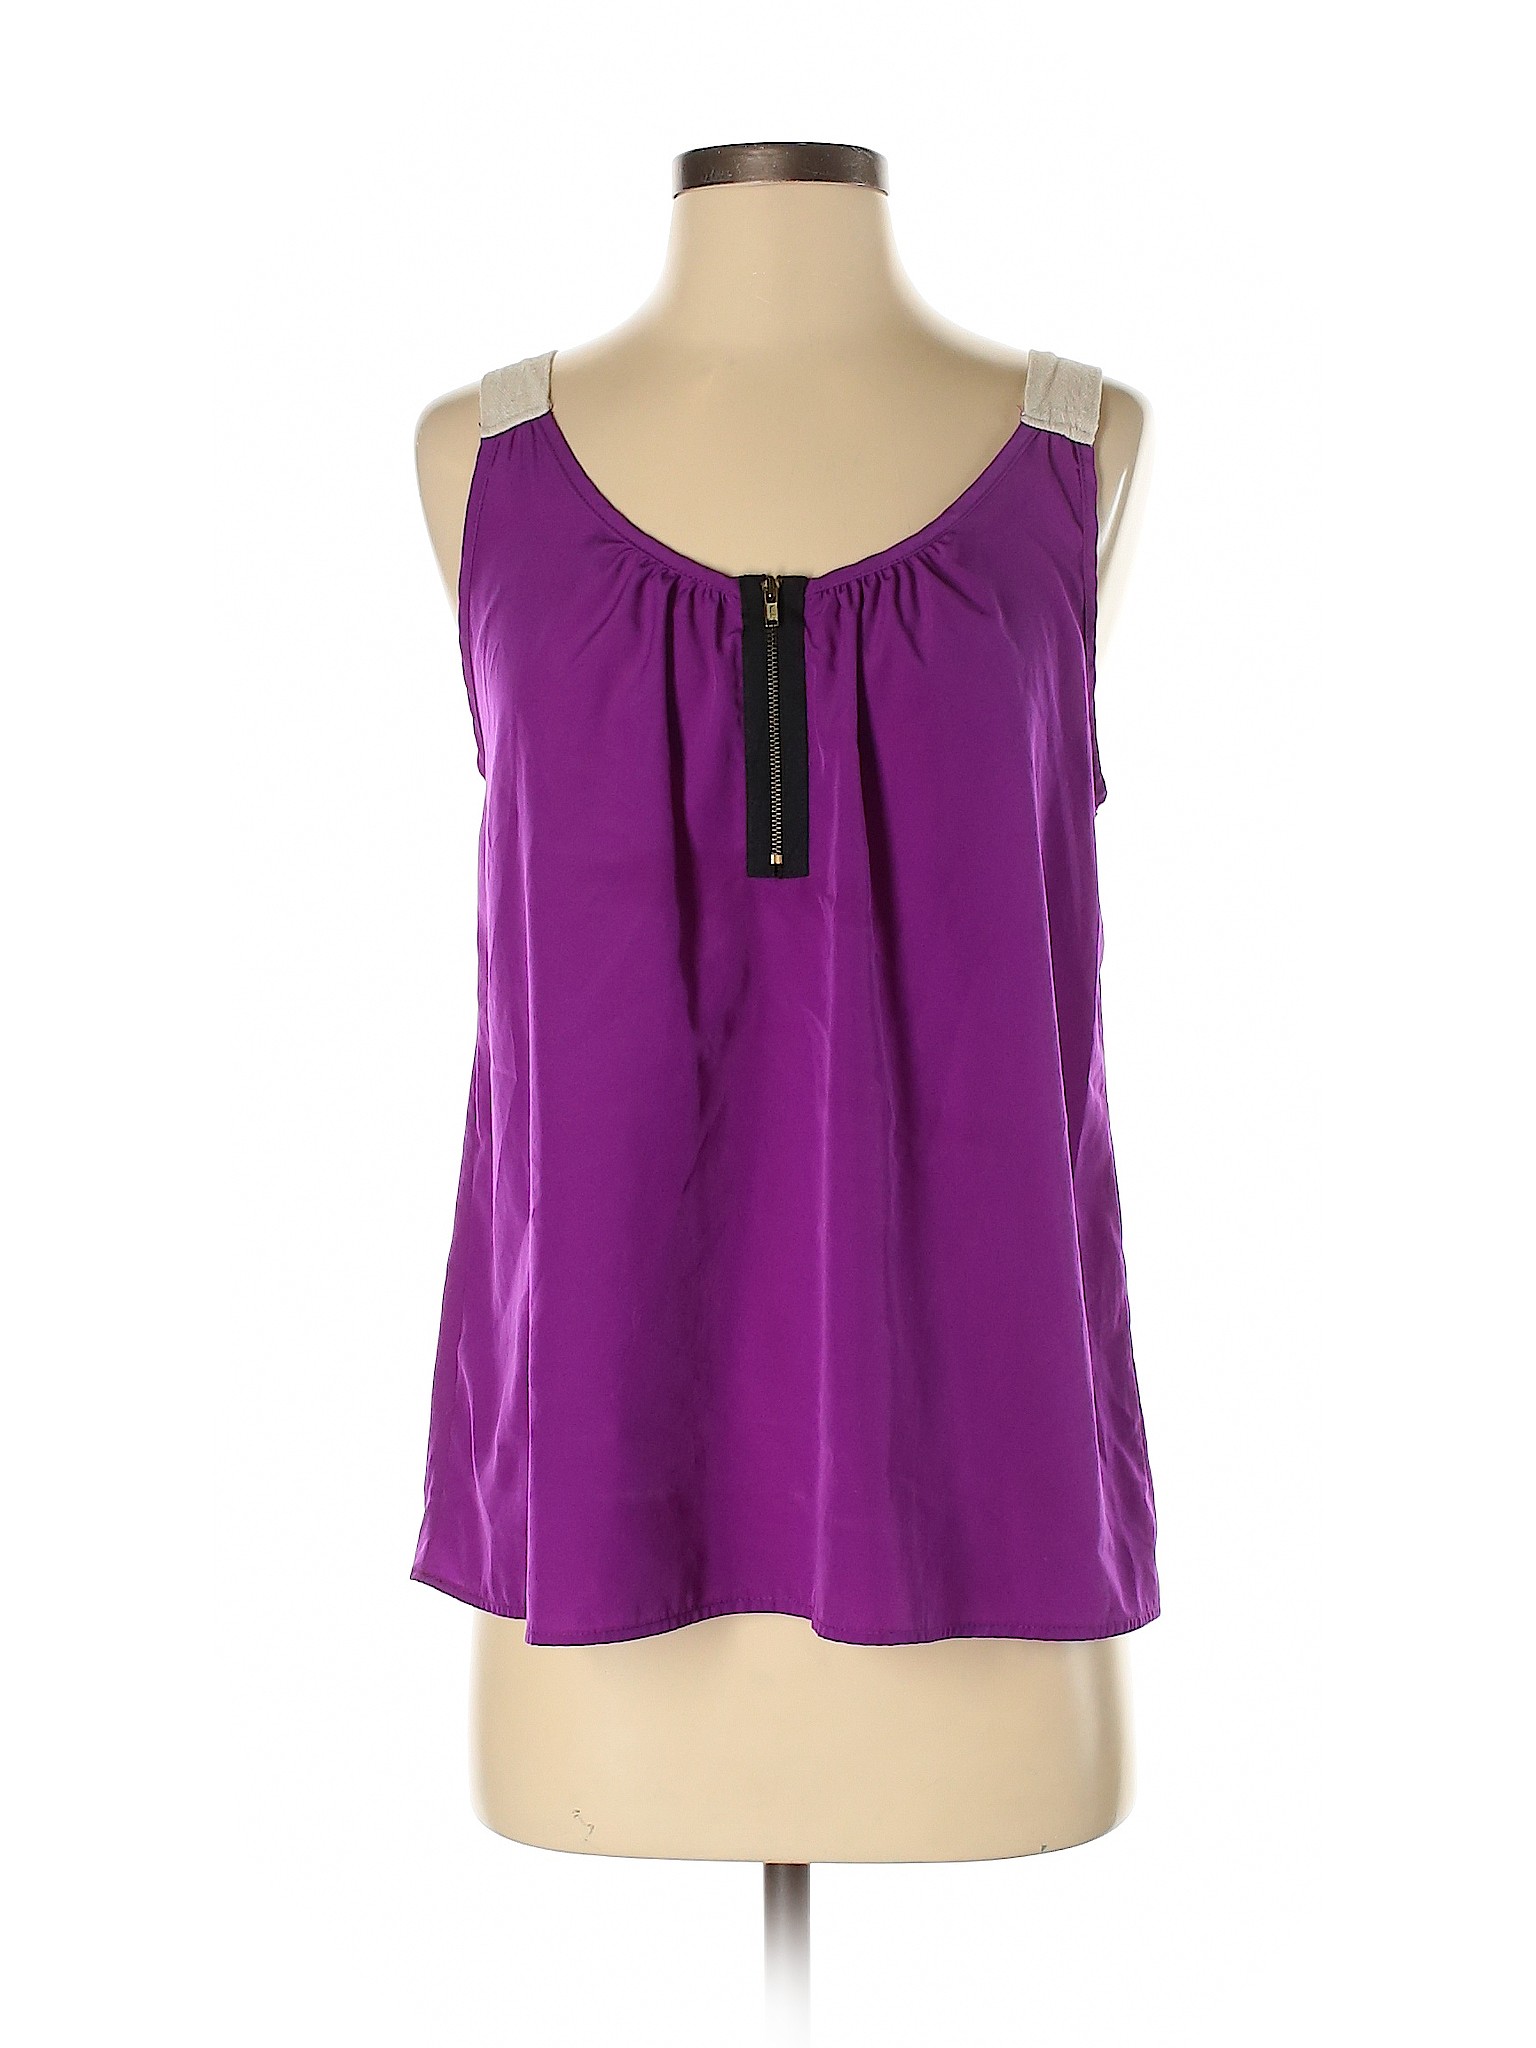 I.ner Women Purple Sleeveless Blouse S | eBay